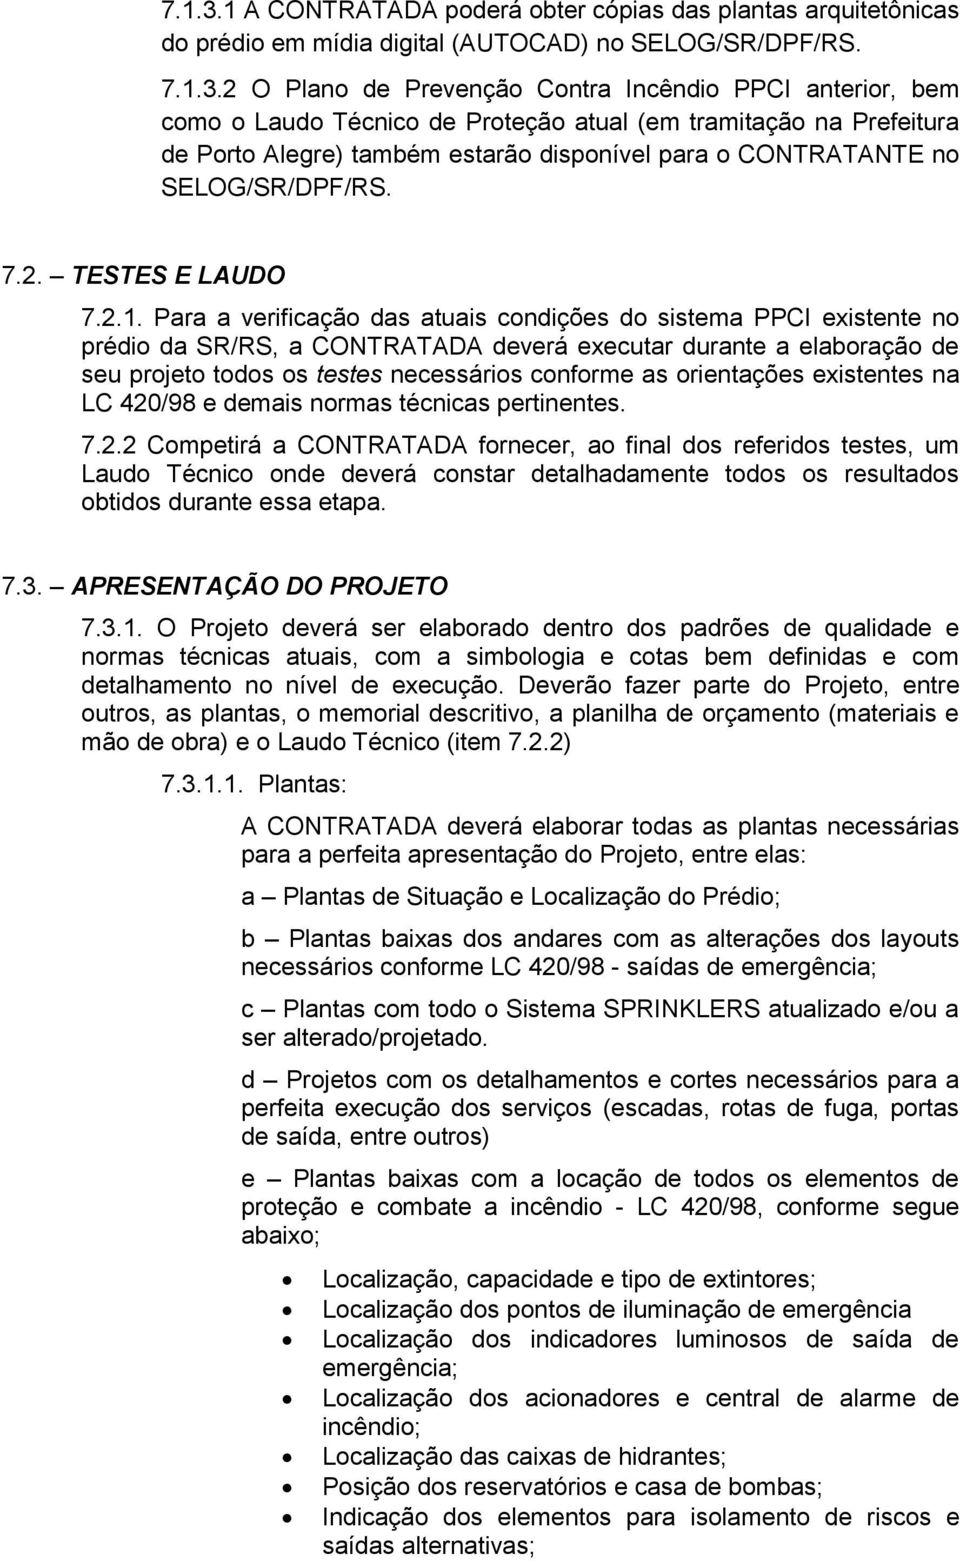 2 O Plano de Prevenção Contra Incêndio PPCI anterior, bem como o Laudo Técnico de Proteção atual (em tramitação na Prefeitura de Porto Alegre) também estarão disponível para o CONTRATANTE no